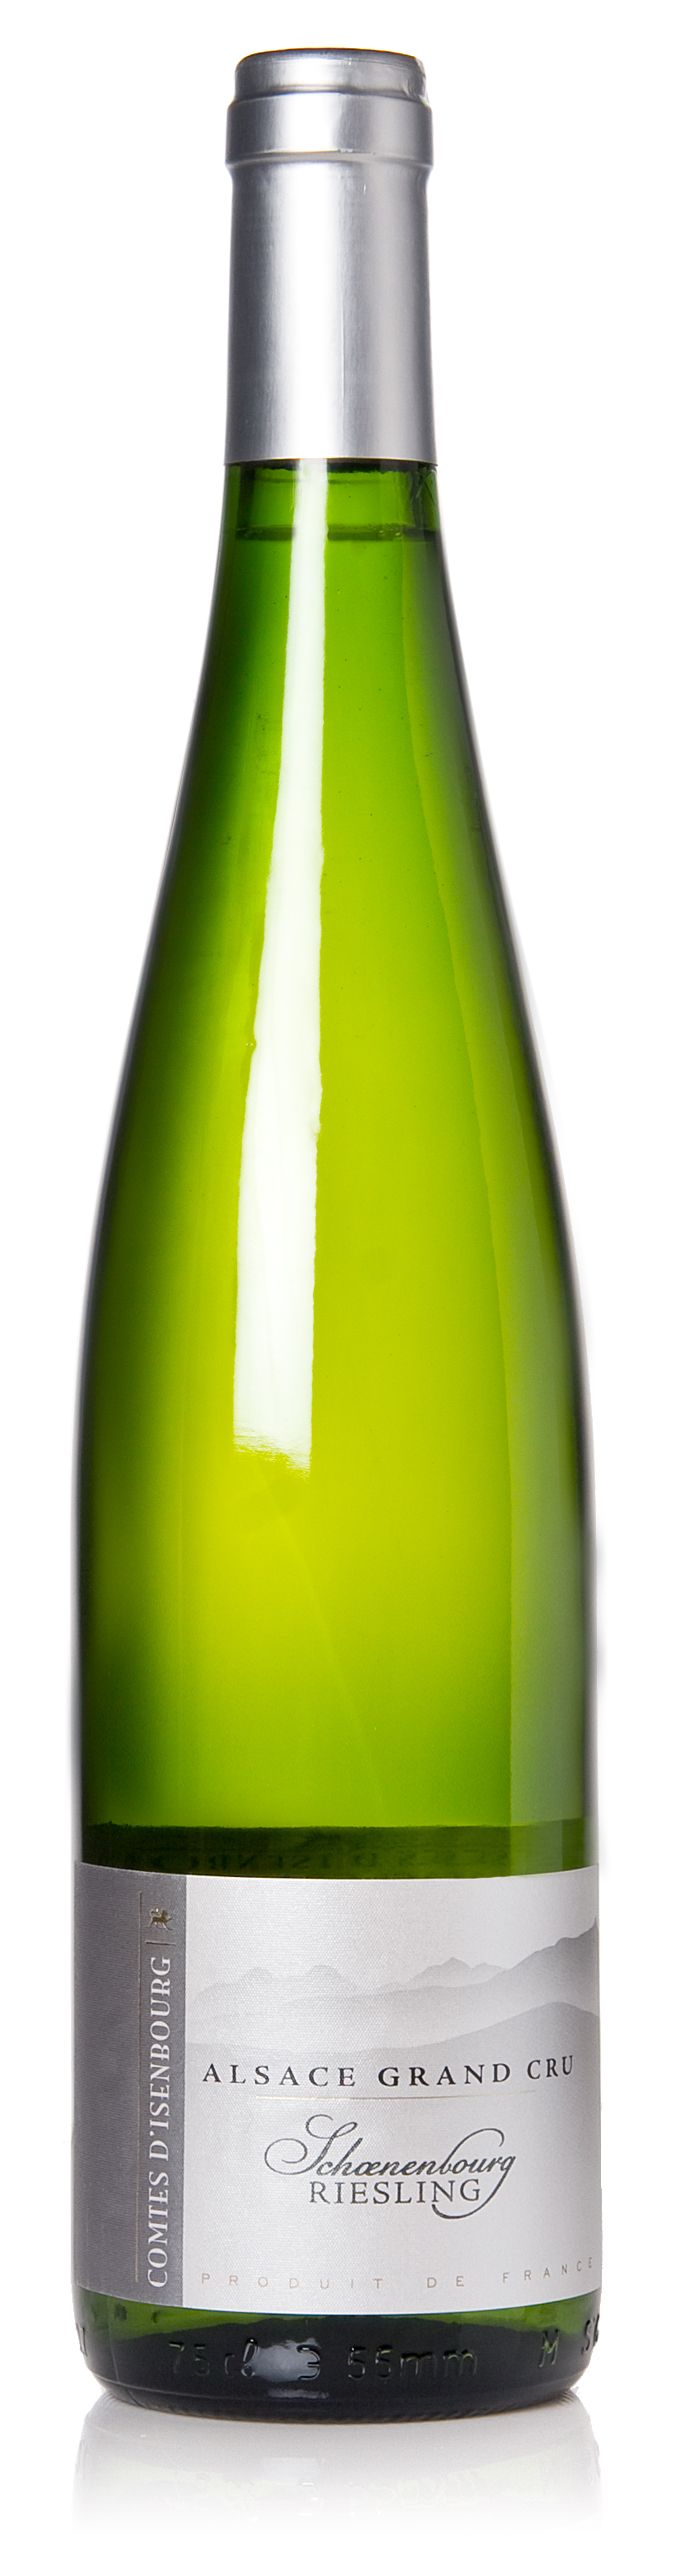 Ljuvligt Alsace-vin, gjort på Grand Cru-druvor. (art nr 2175)